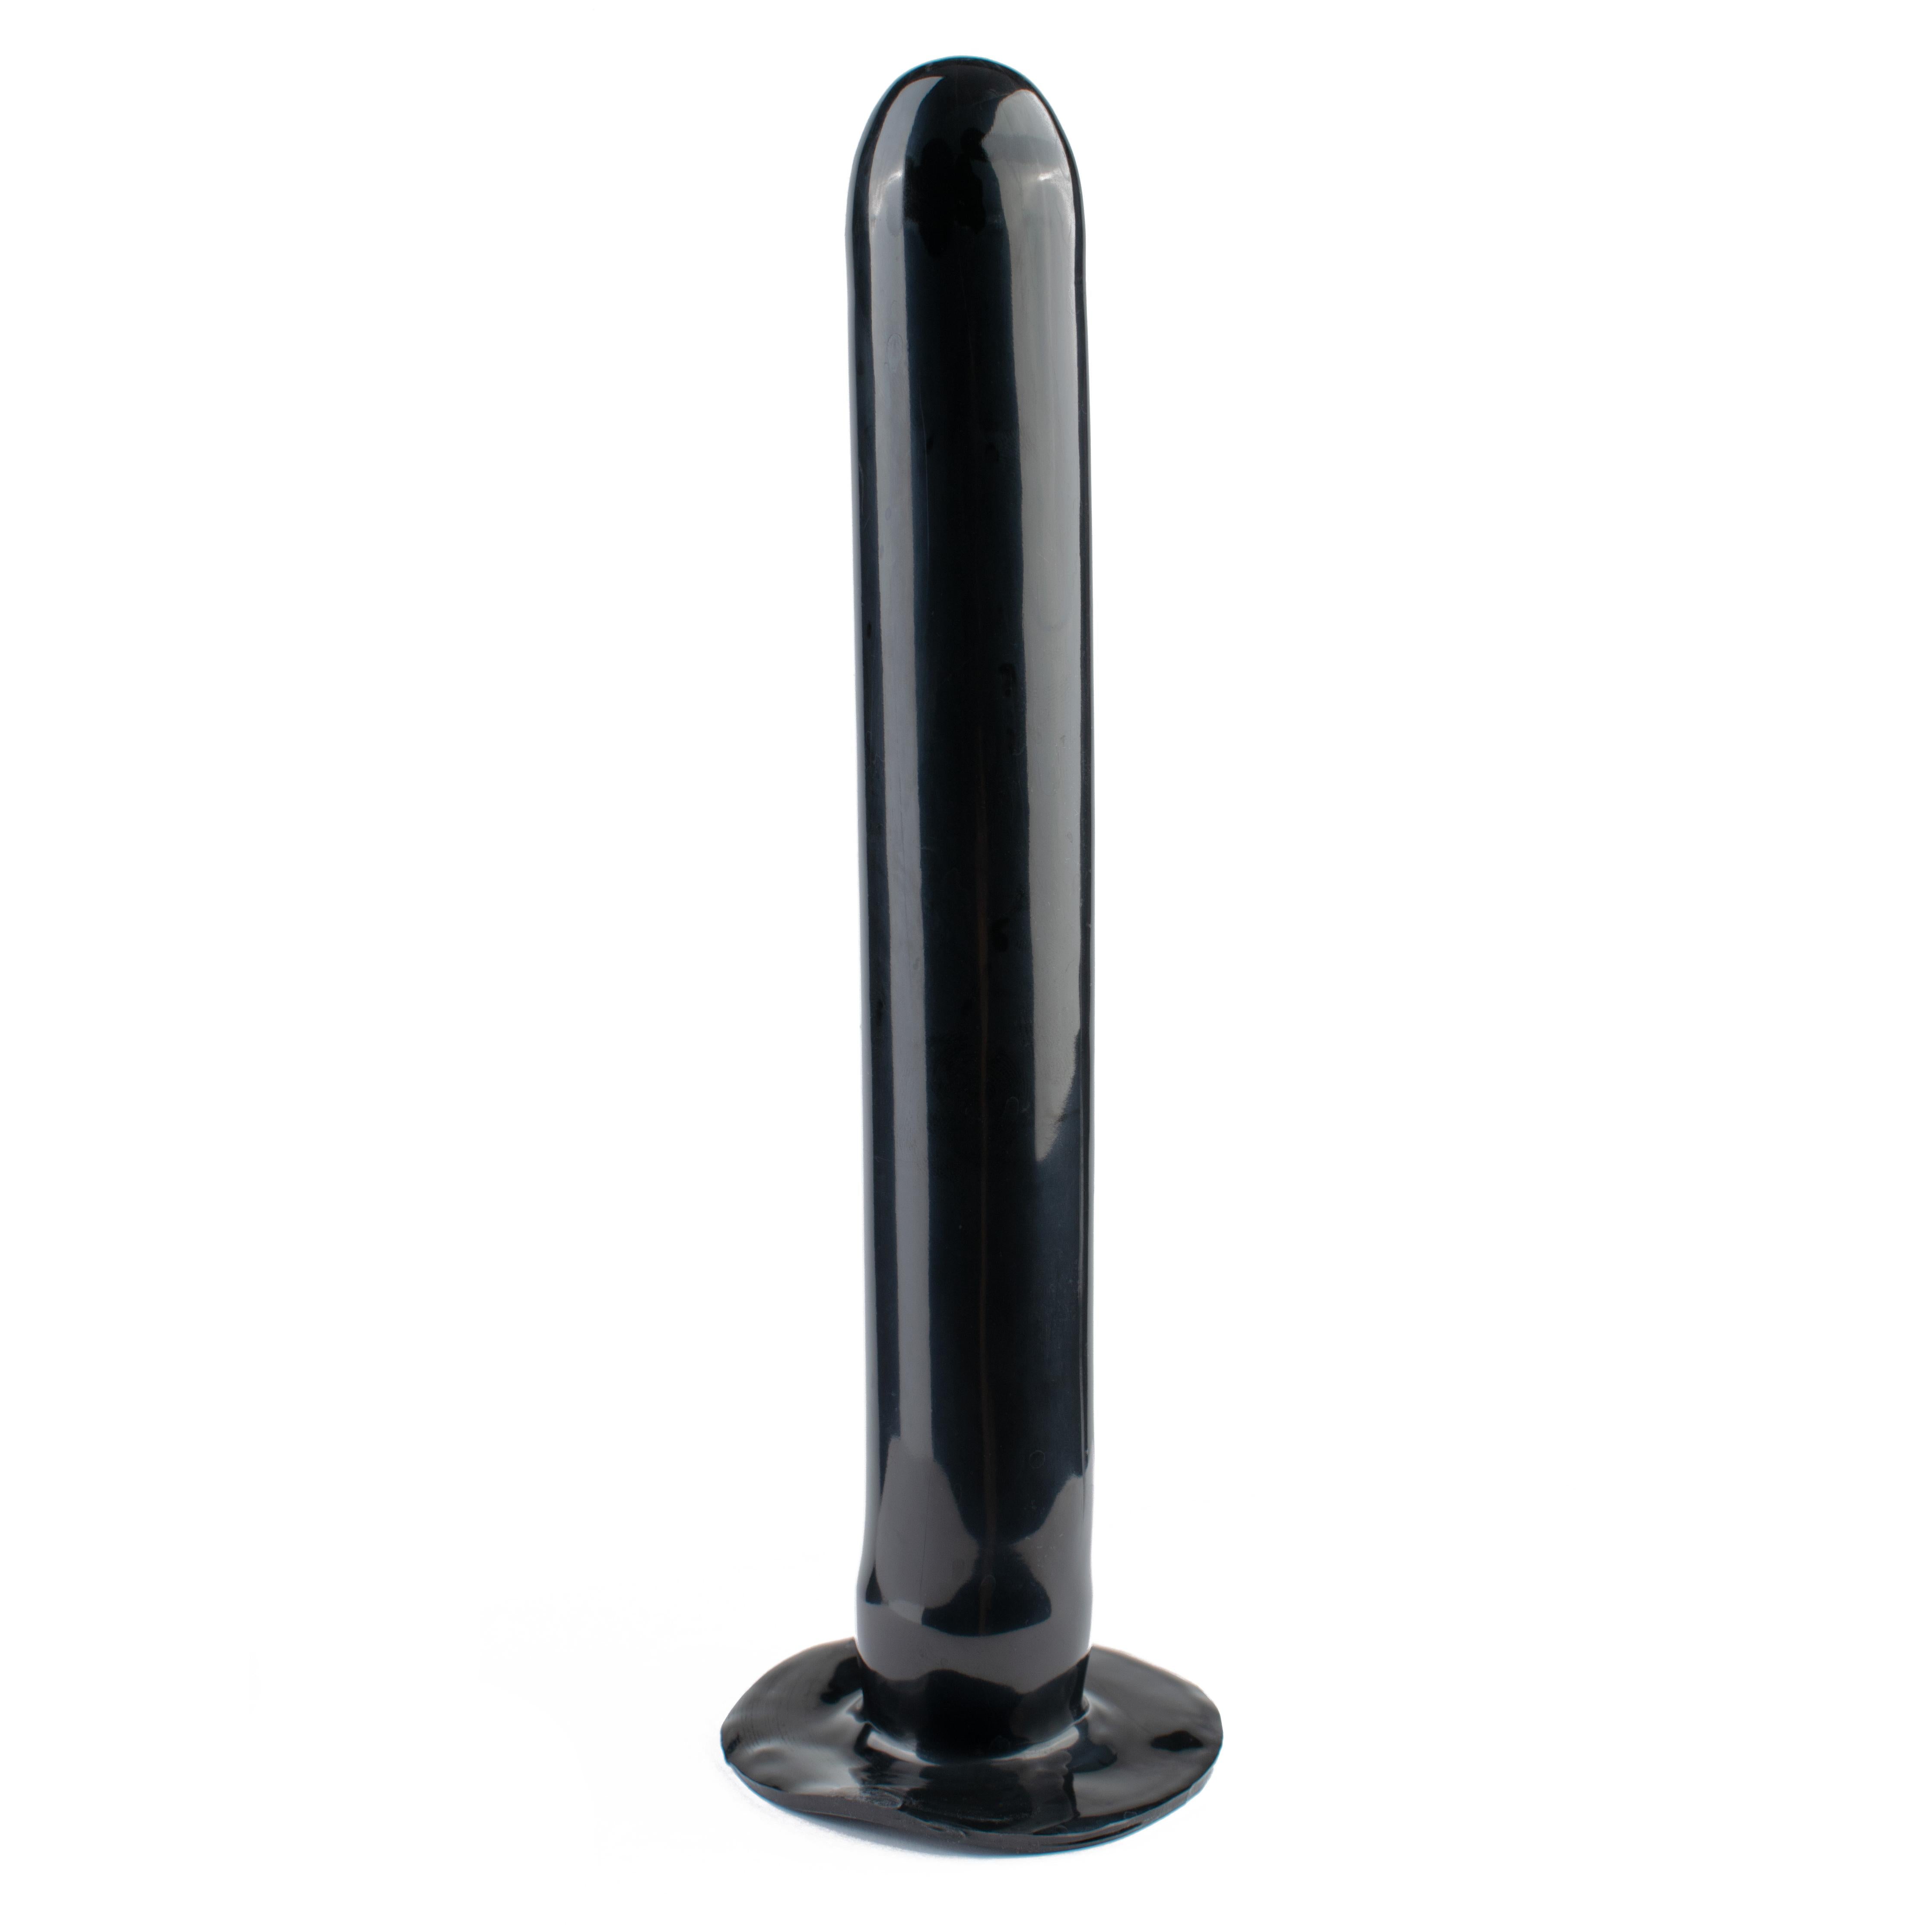 Rubberfashion Latex Butt Plug - Anal Plug - aufblasbarer Analplug mit Pumpe für Frauen und Männer 11,5 x 4,5 cm